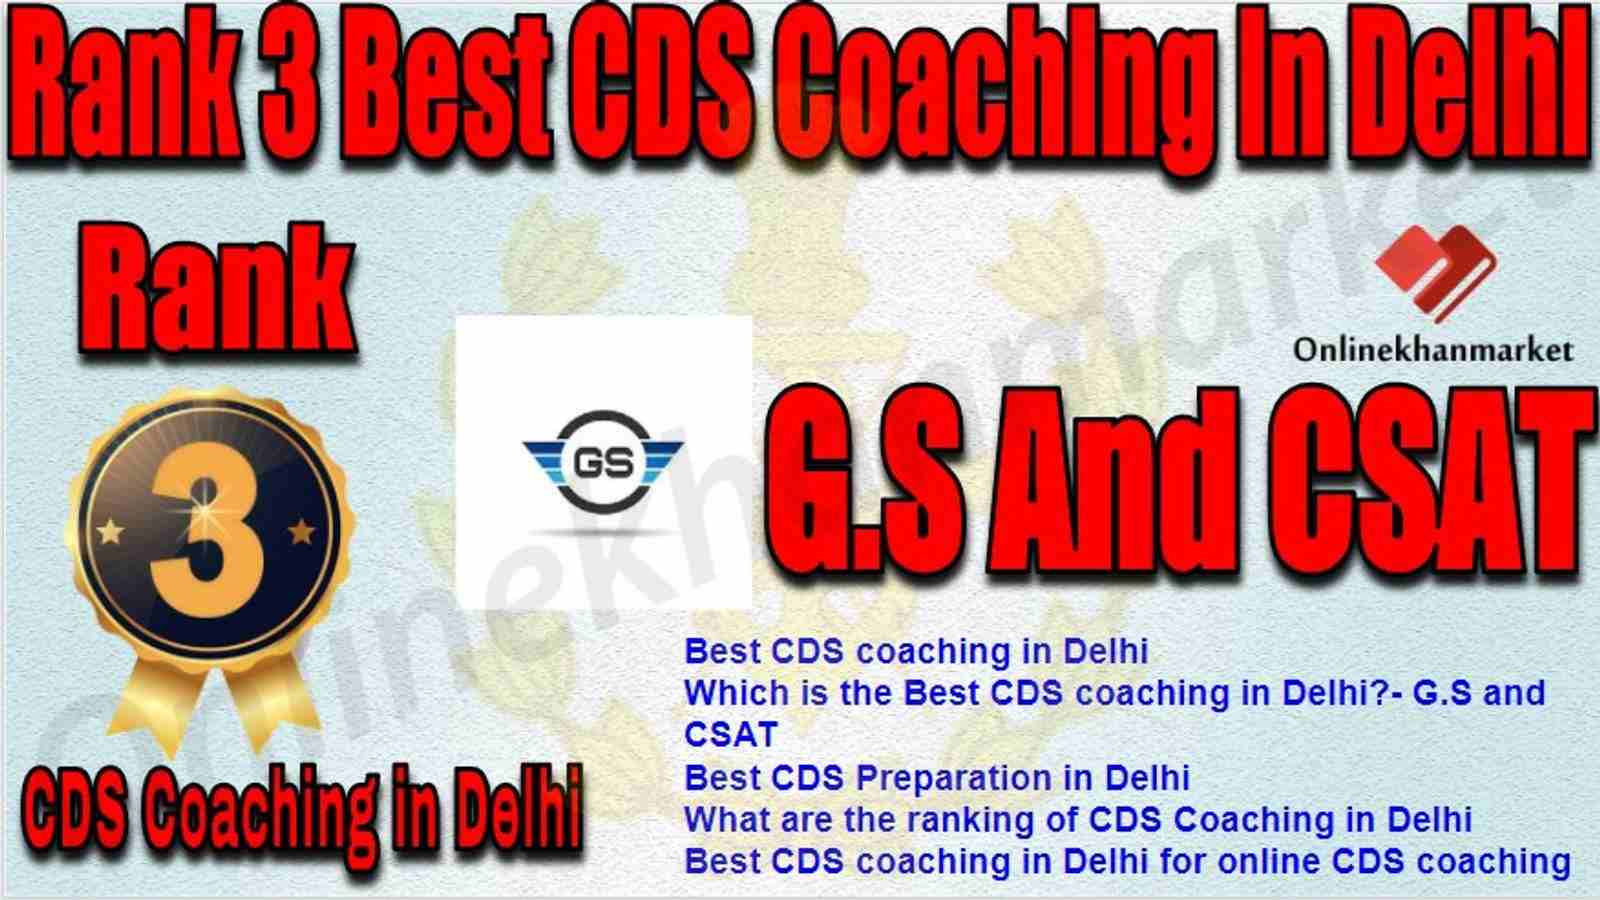 Rank 3 Best CDS Coaching in delhi